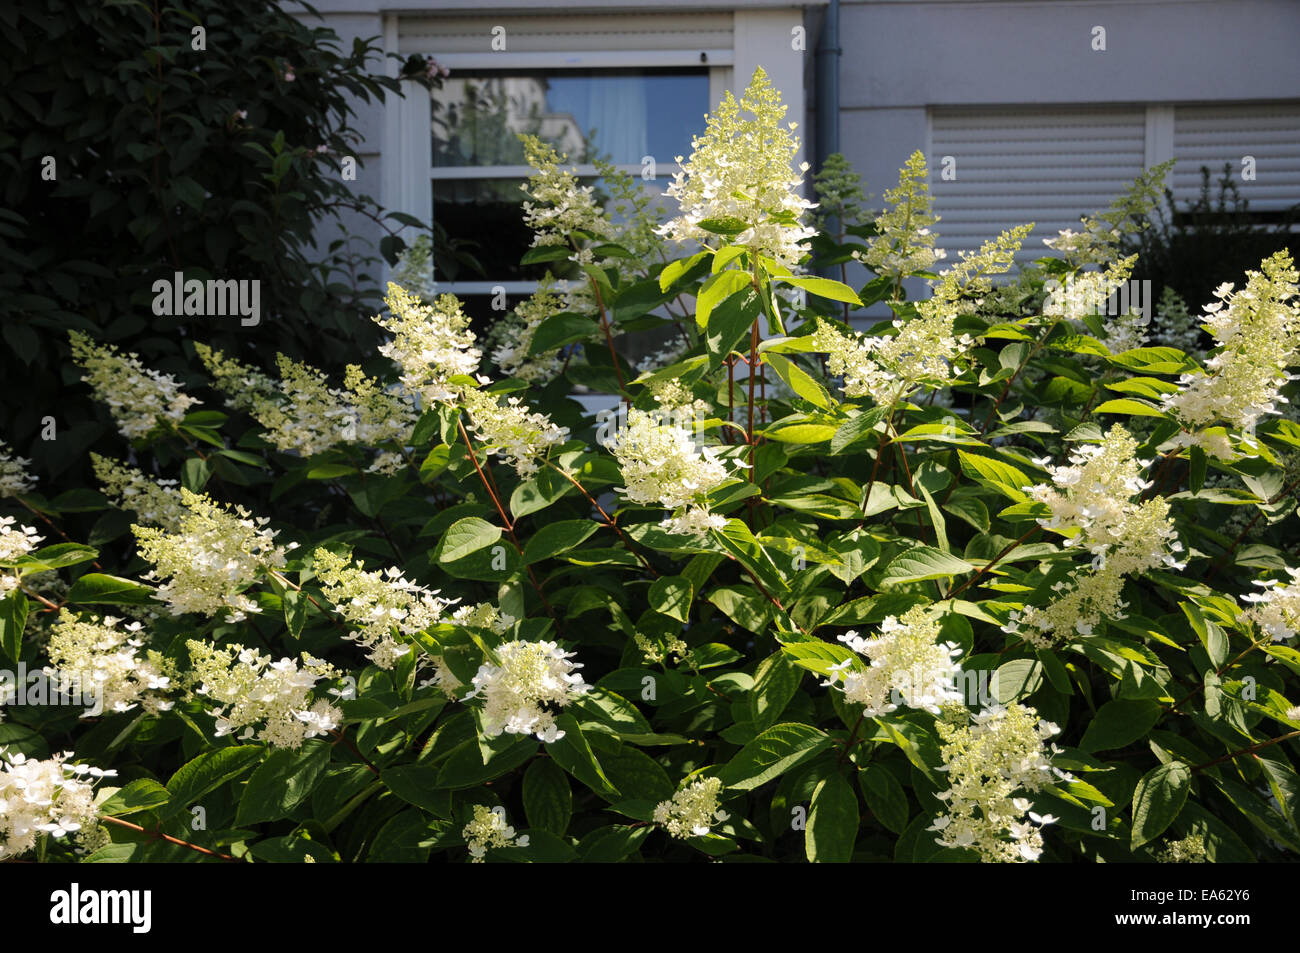 Rispen-Hortensie Hydrangea, Hortensie, hortensia paniculata Kyushu Stock  Photo - Alamy